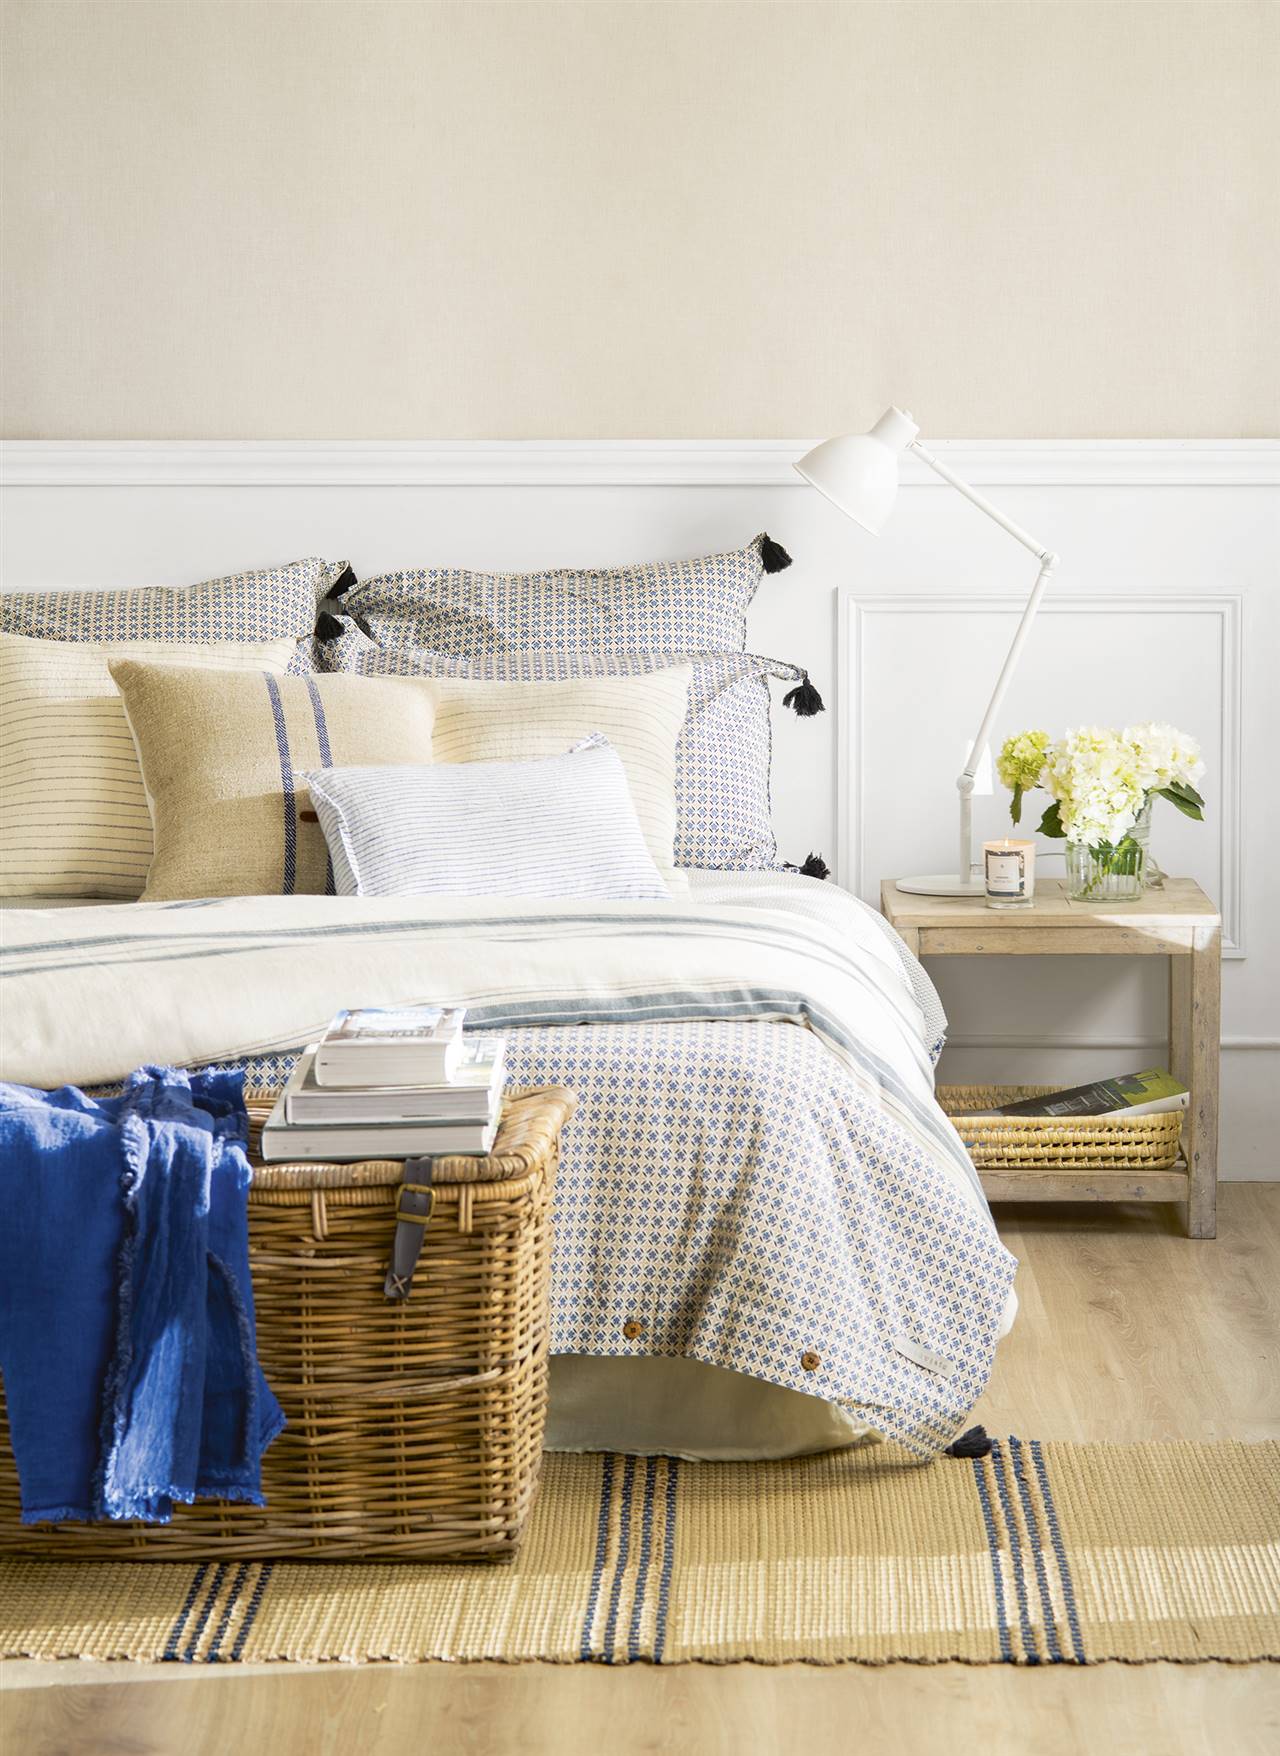 Dormitorio de estilo natural con baúl de mimbre, mesita de noche de madera y alfombra de fibras.